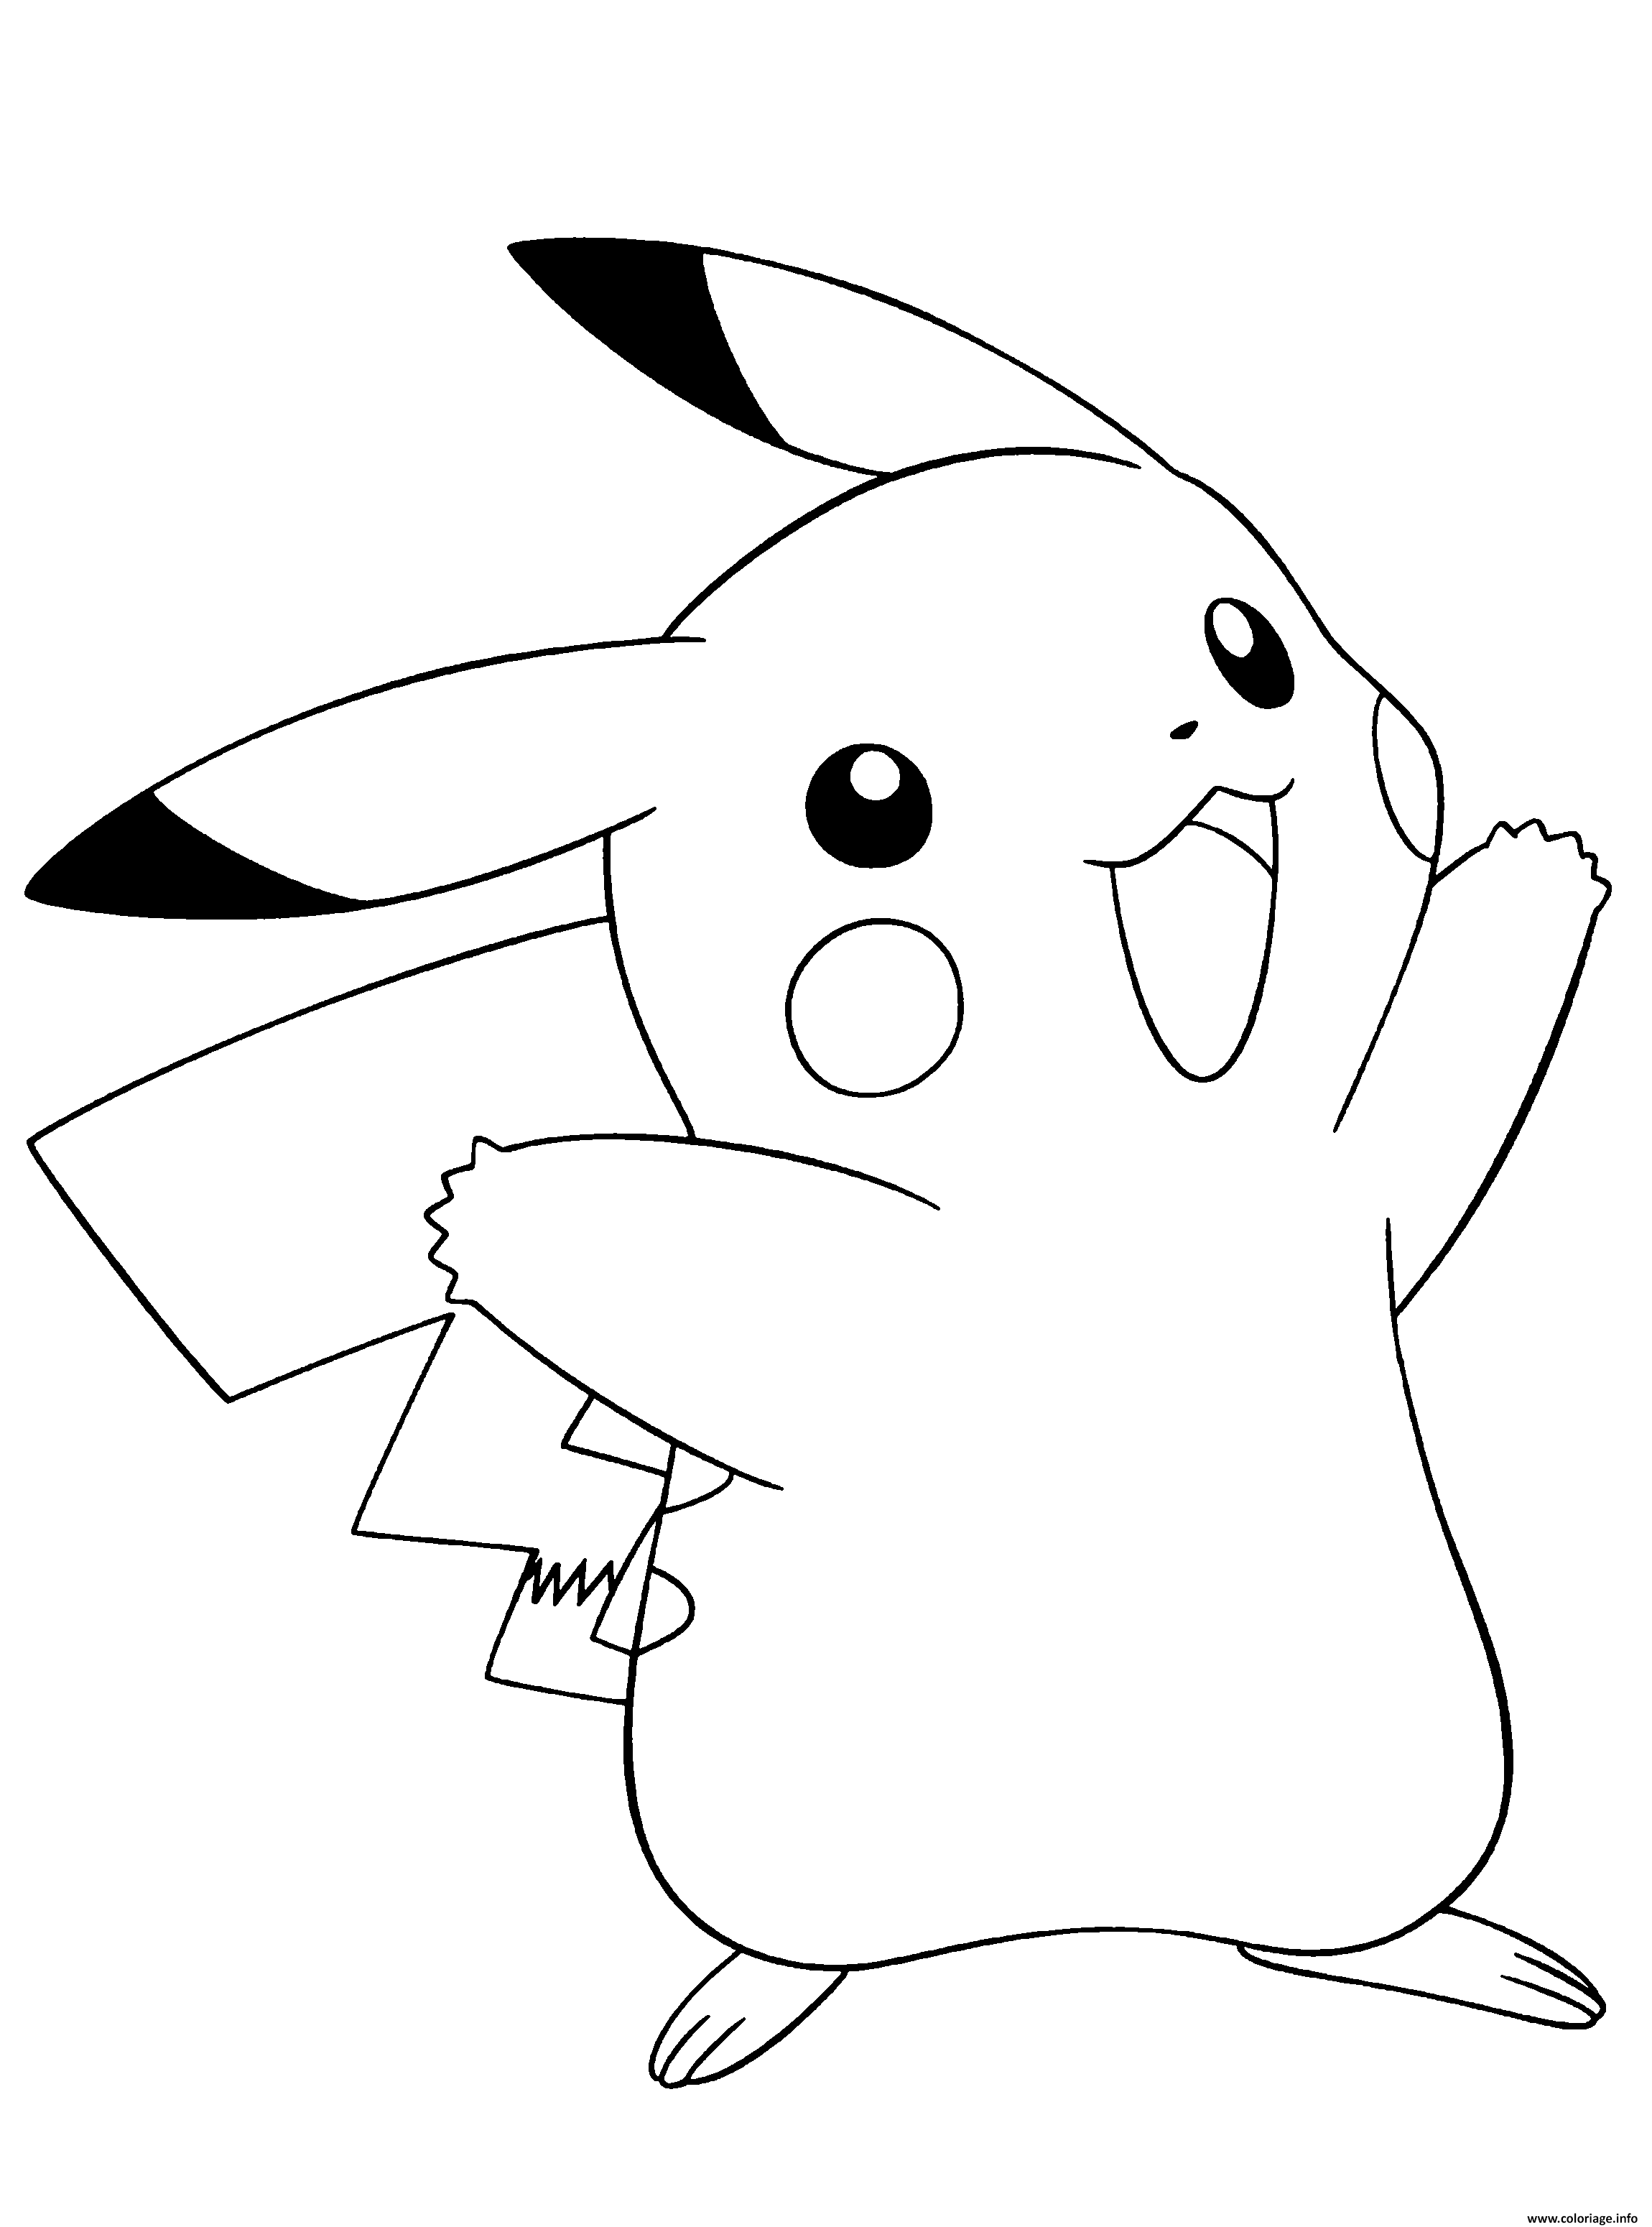 Dessin pokemon noir et blanc pikachu Coloriage Gratuit à Imprimer